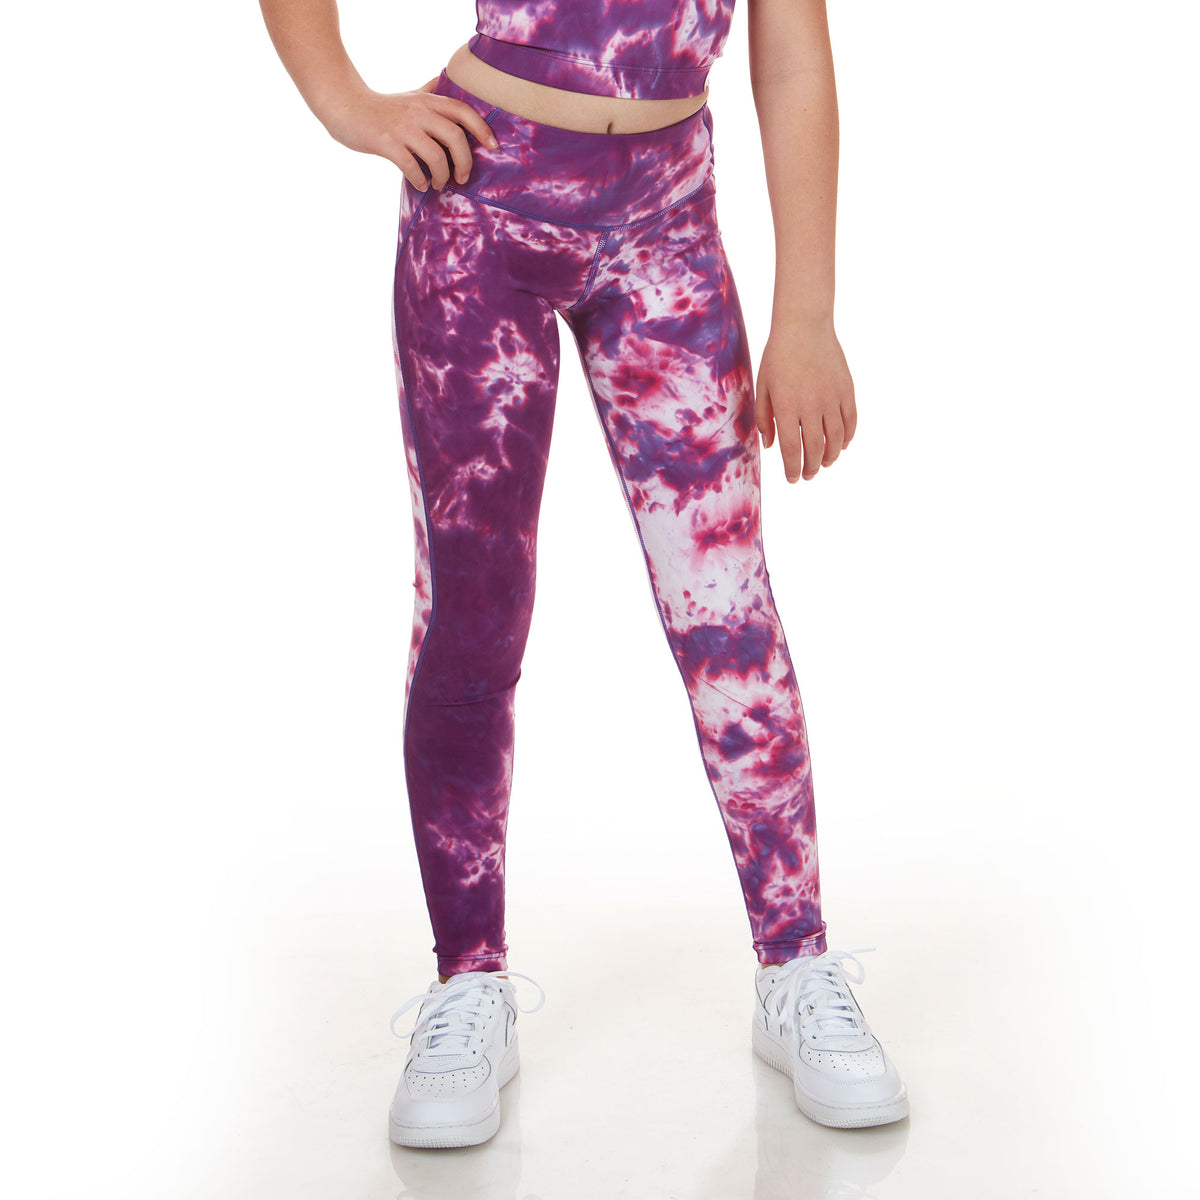 Cloud 9 Tye-dye fitness sports bra & leggings set Lavender